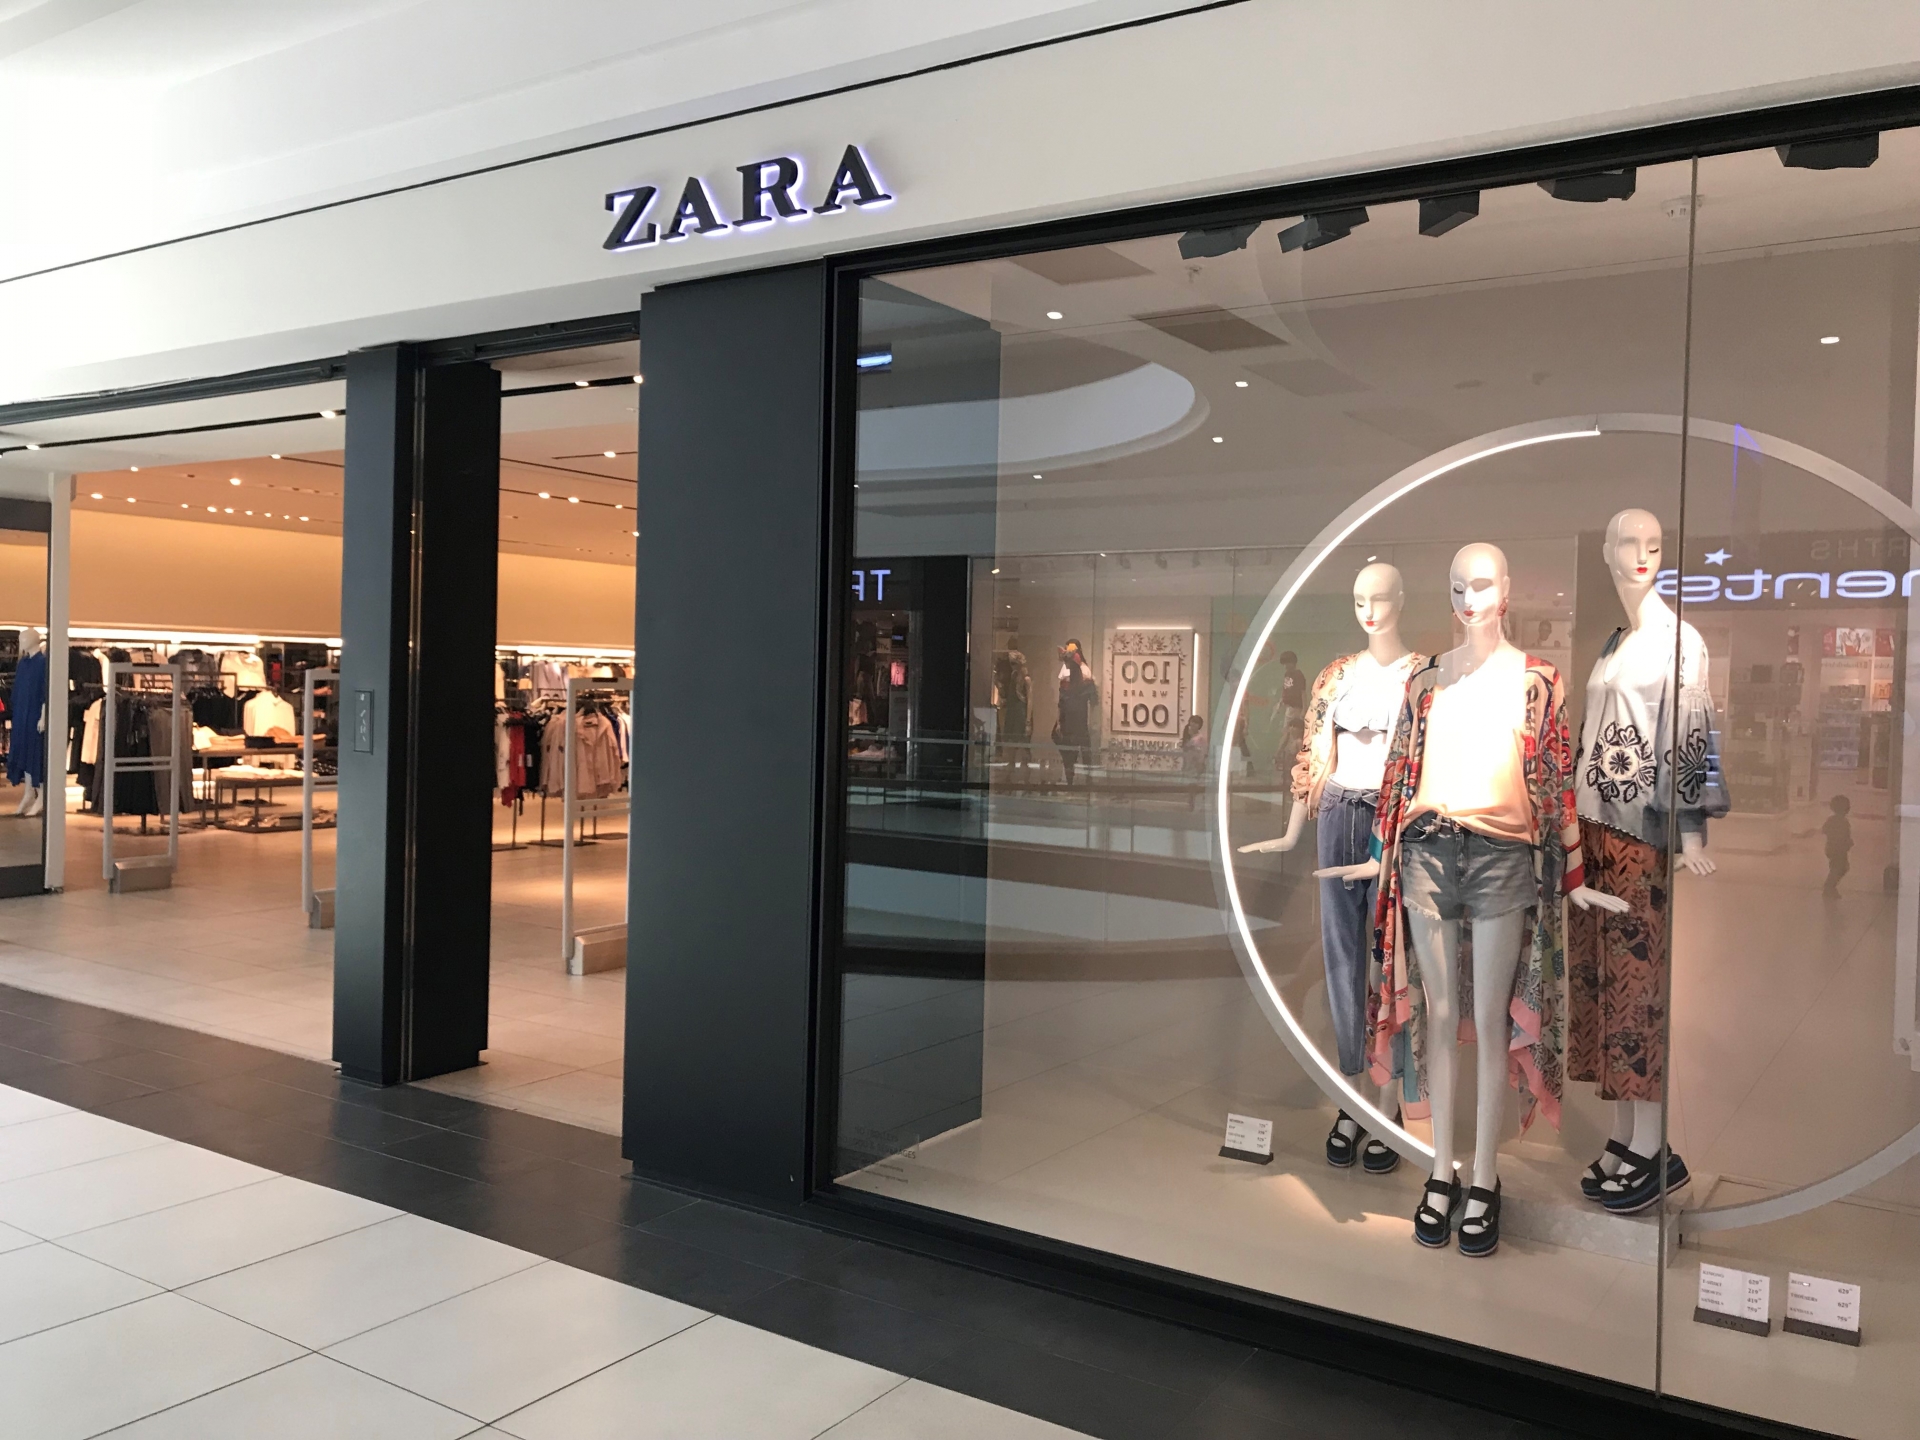 Zara thường xuyên bị những nhà mốt cao cấp chỉ trích vì ăn cắp chất xám của họ. Chiến lược kinh doanh của Zara hướng tới đối tượng khách hàng trẻ tuổi chưa có nhiều tài chính nhưng lại đam mê đồ hiệu.